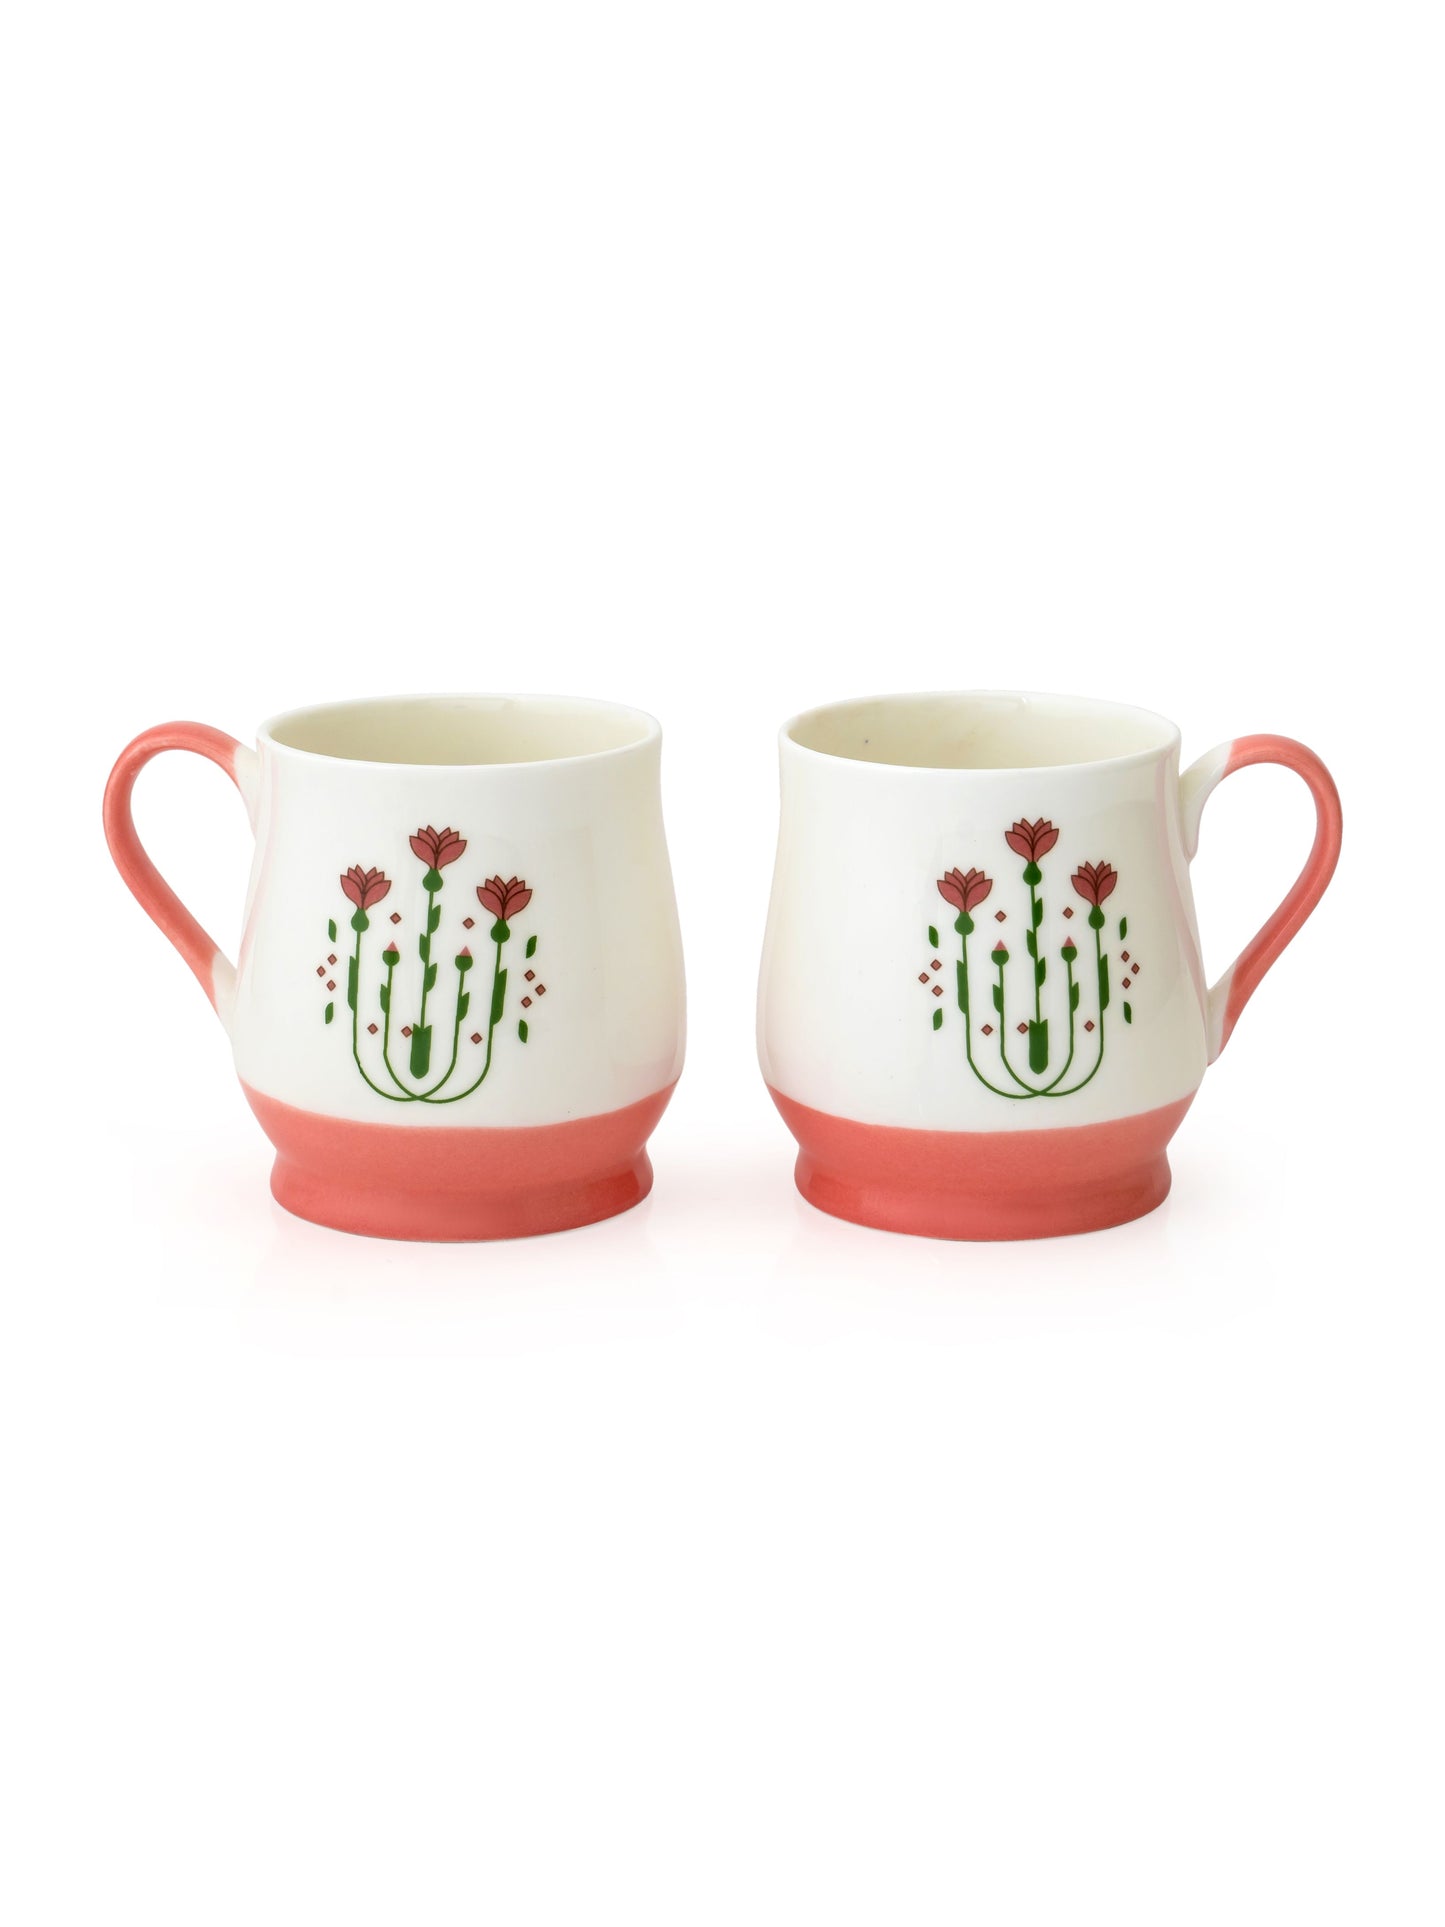 Adam Blossom Coffee & Tea Mug Set of 6 (BL2)